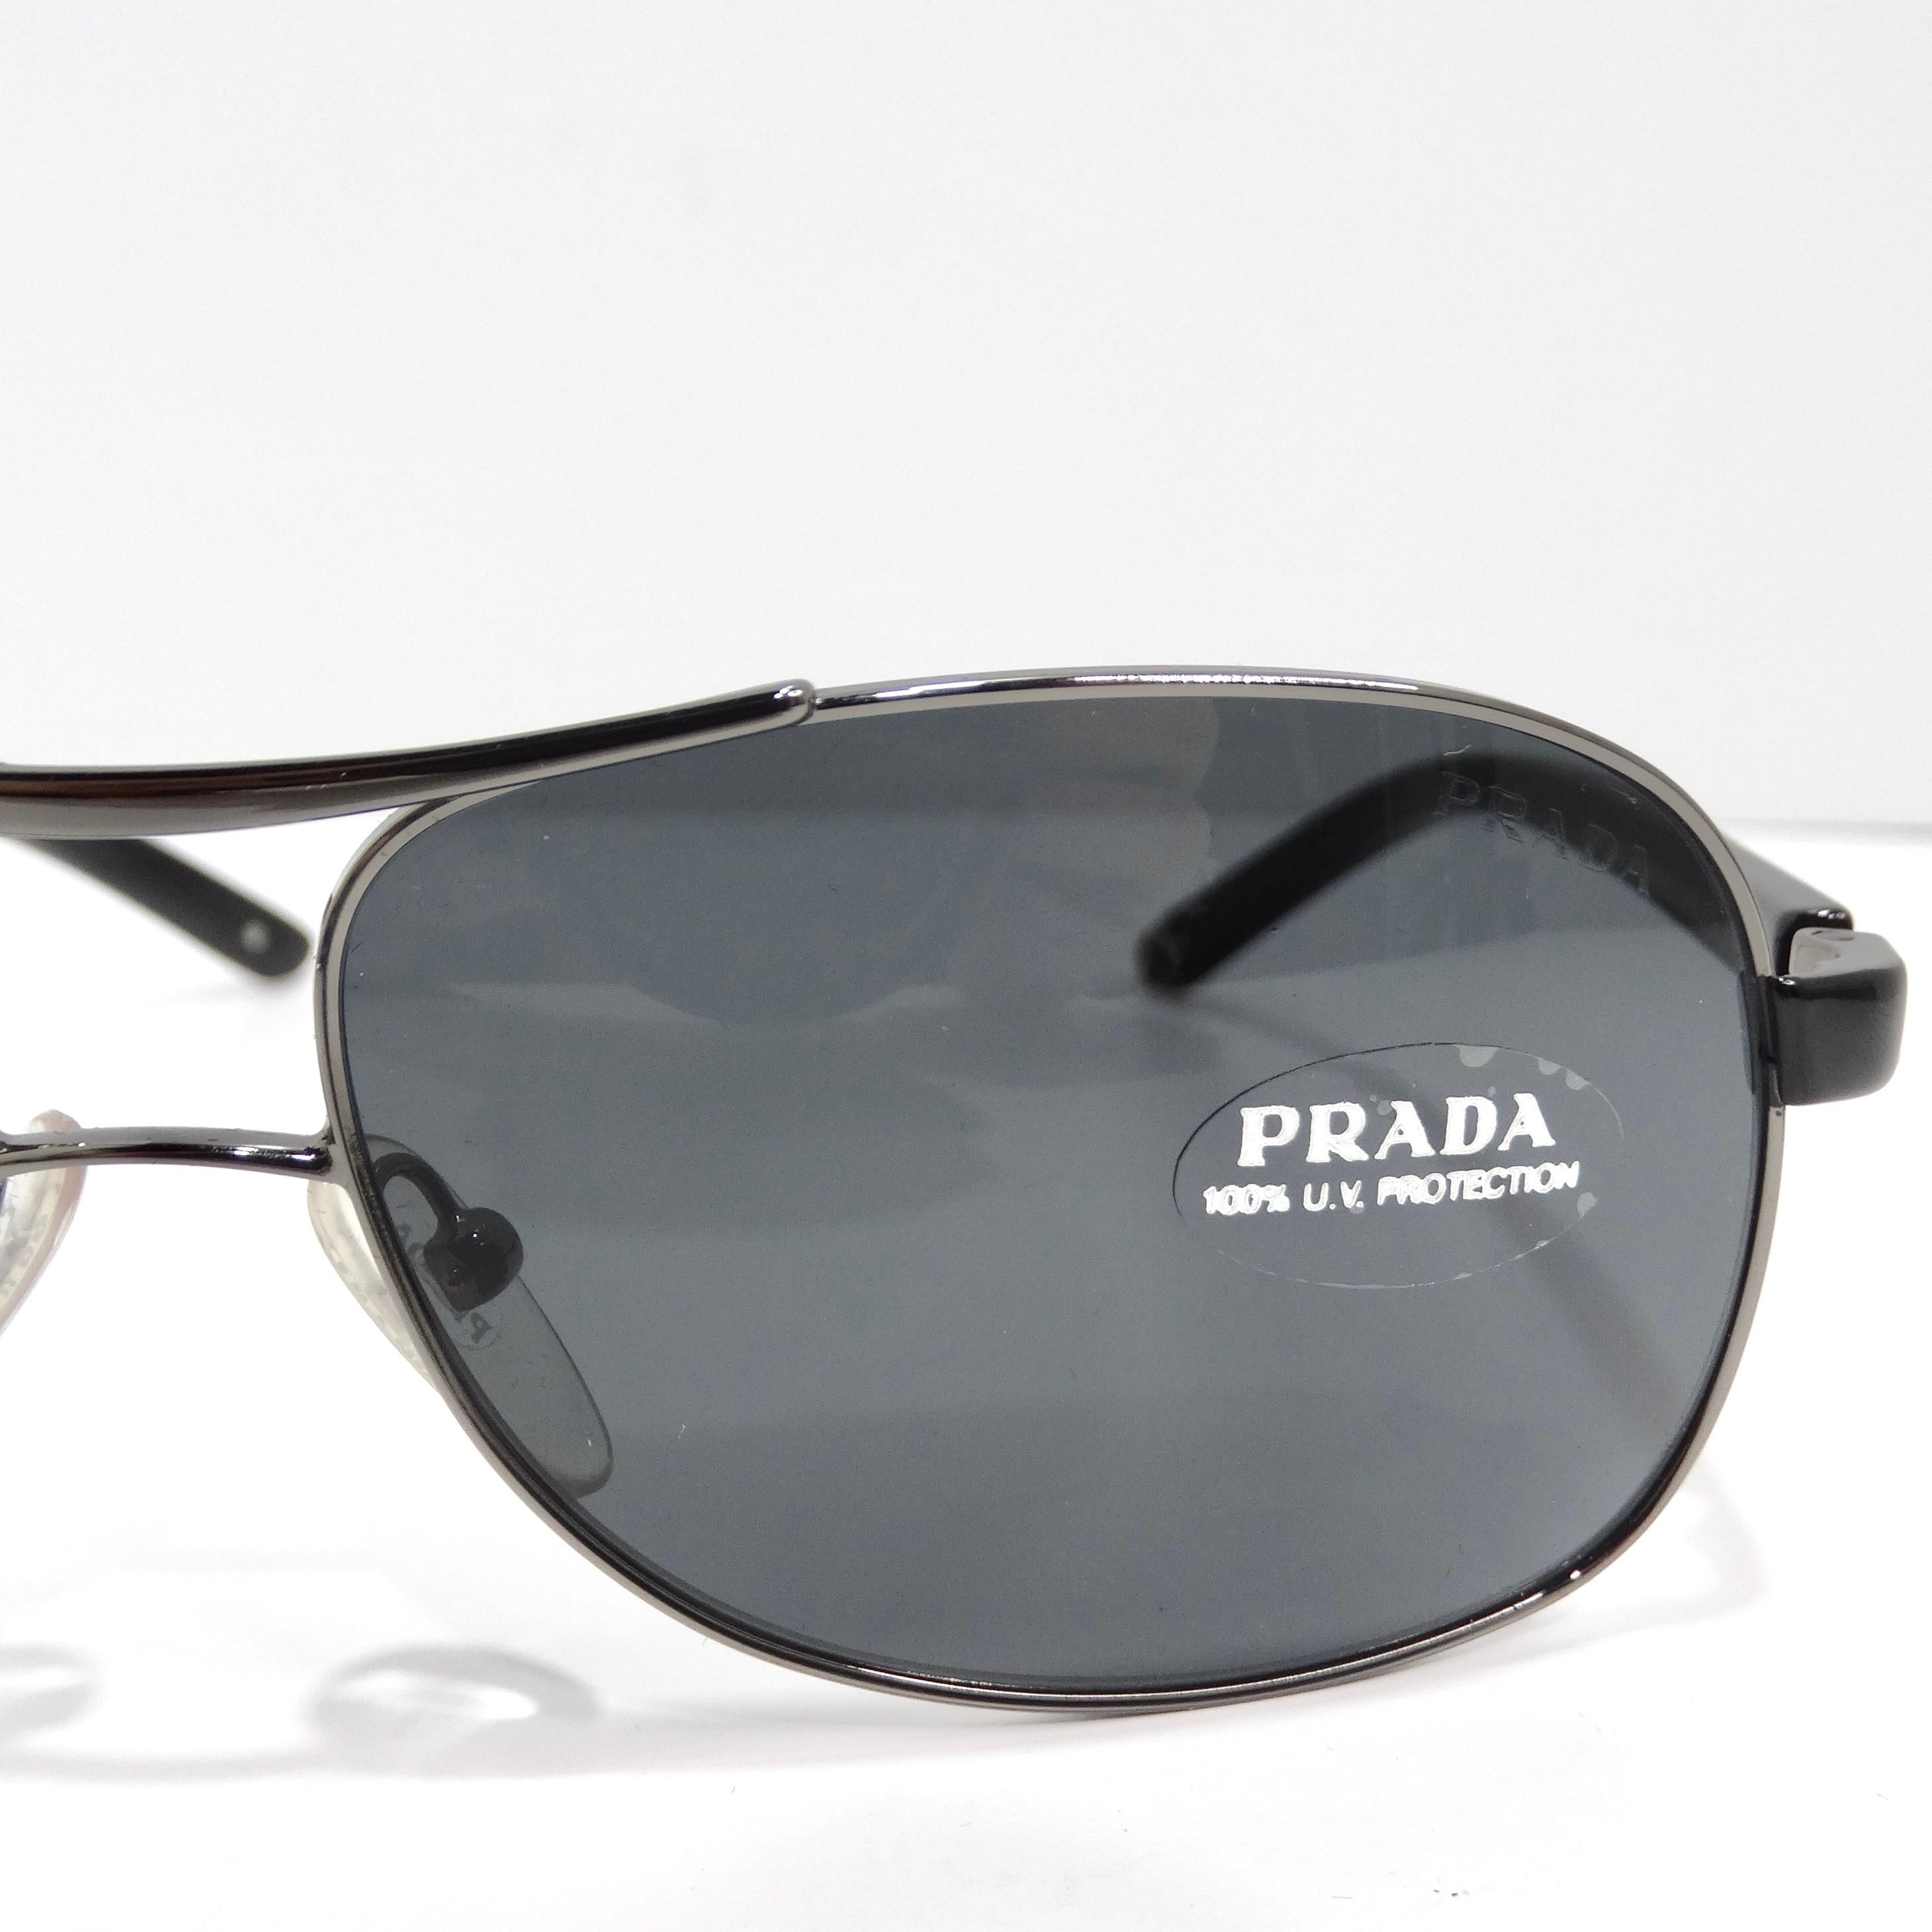 Entrez dans l'élégance intemporelle avec les lunettes de soleil Aviator Prada 1990s Silver Tone, un style aviateur classique qui allie sans effort sophistication et style durable. Ces lunettes de soleil présentent de fins bords argentés, complétés